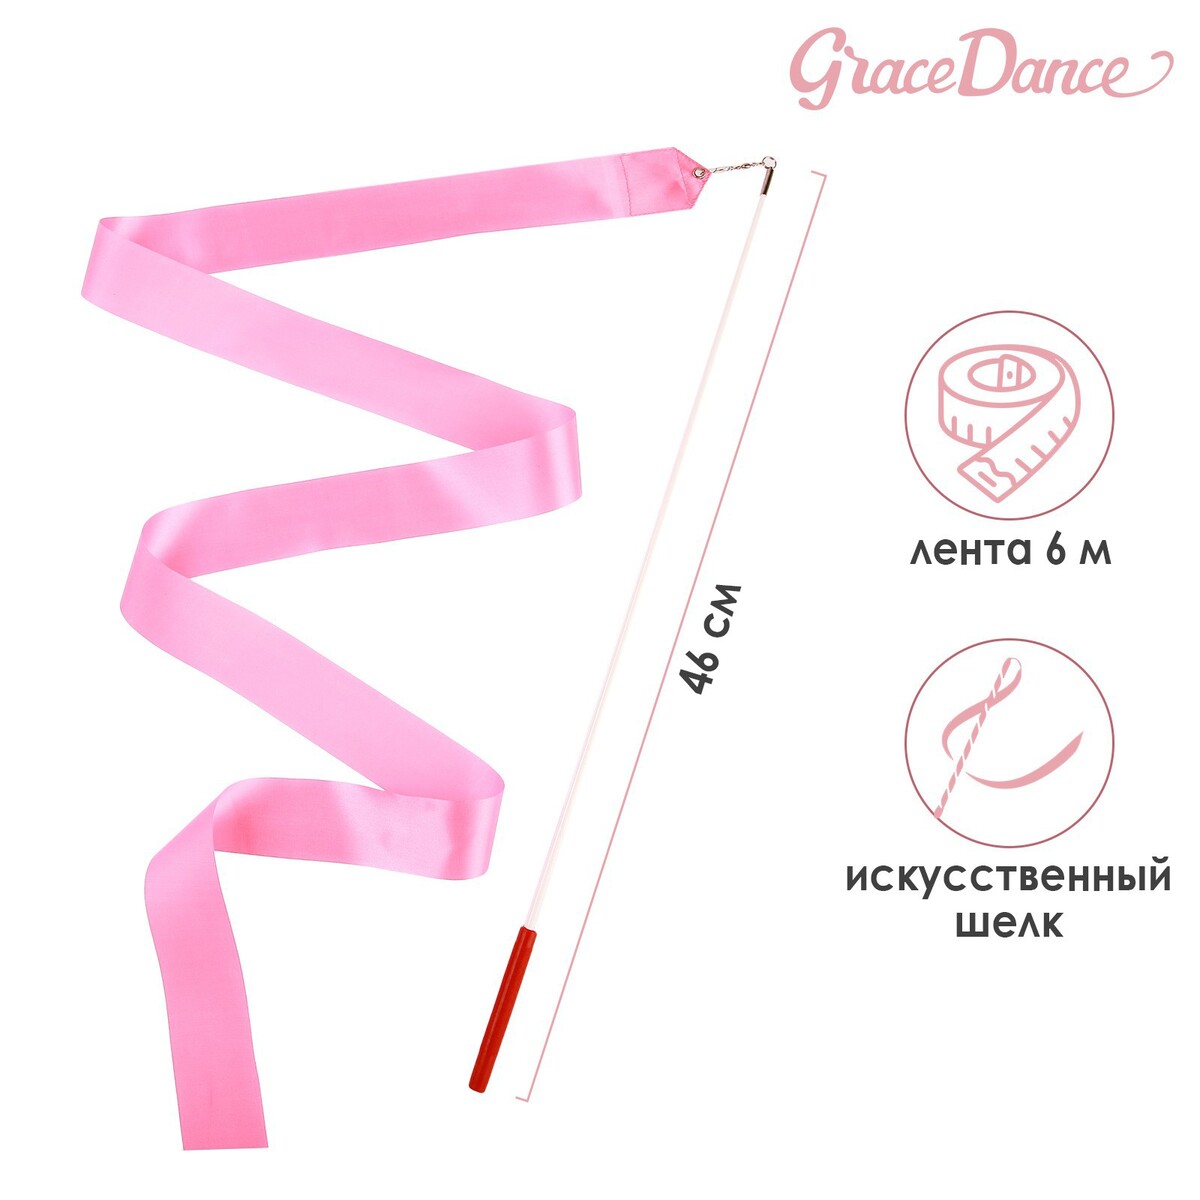 Лента для художественной гимнастики с палочкой grace dance, 6 м, цвет розовый лента гимнастическая с палочкой grace dance 2 м голубой